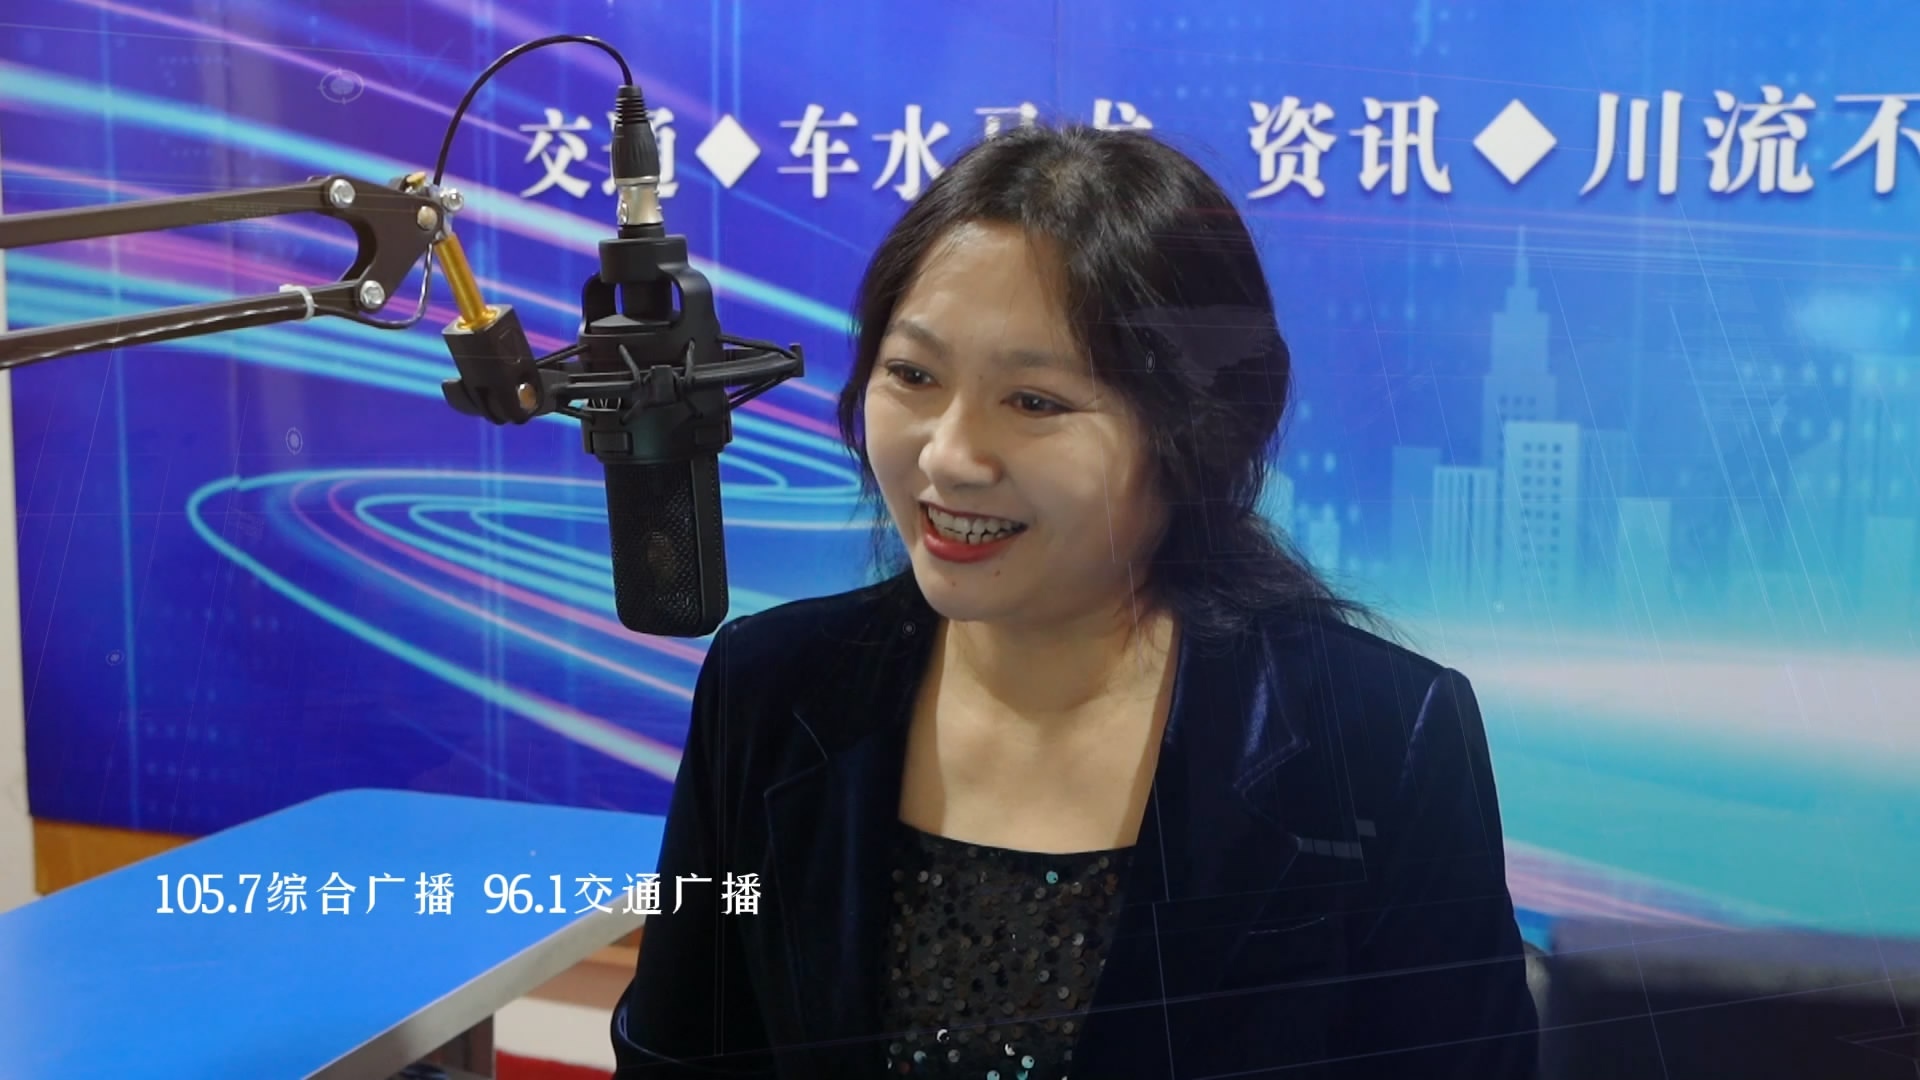 忻州市广播电视台 | FM105.7综合广播 FM96.1交通广播 5G智慧电台 重磅登场！